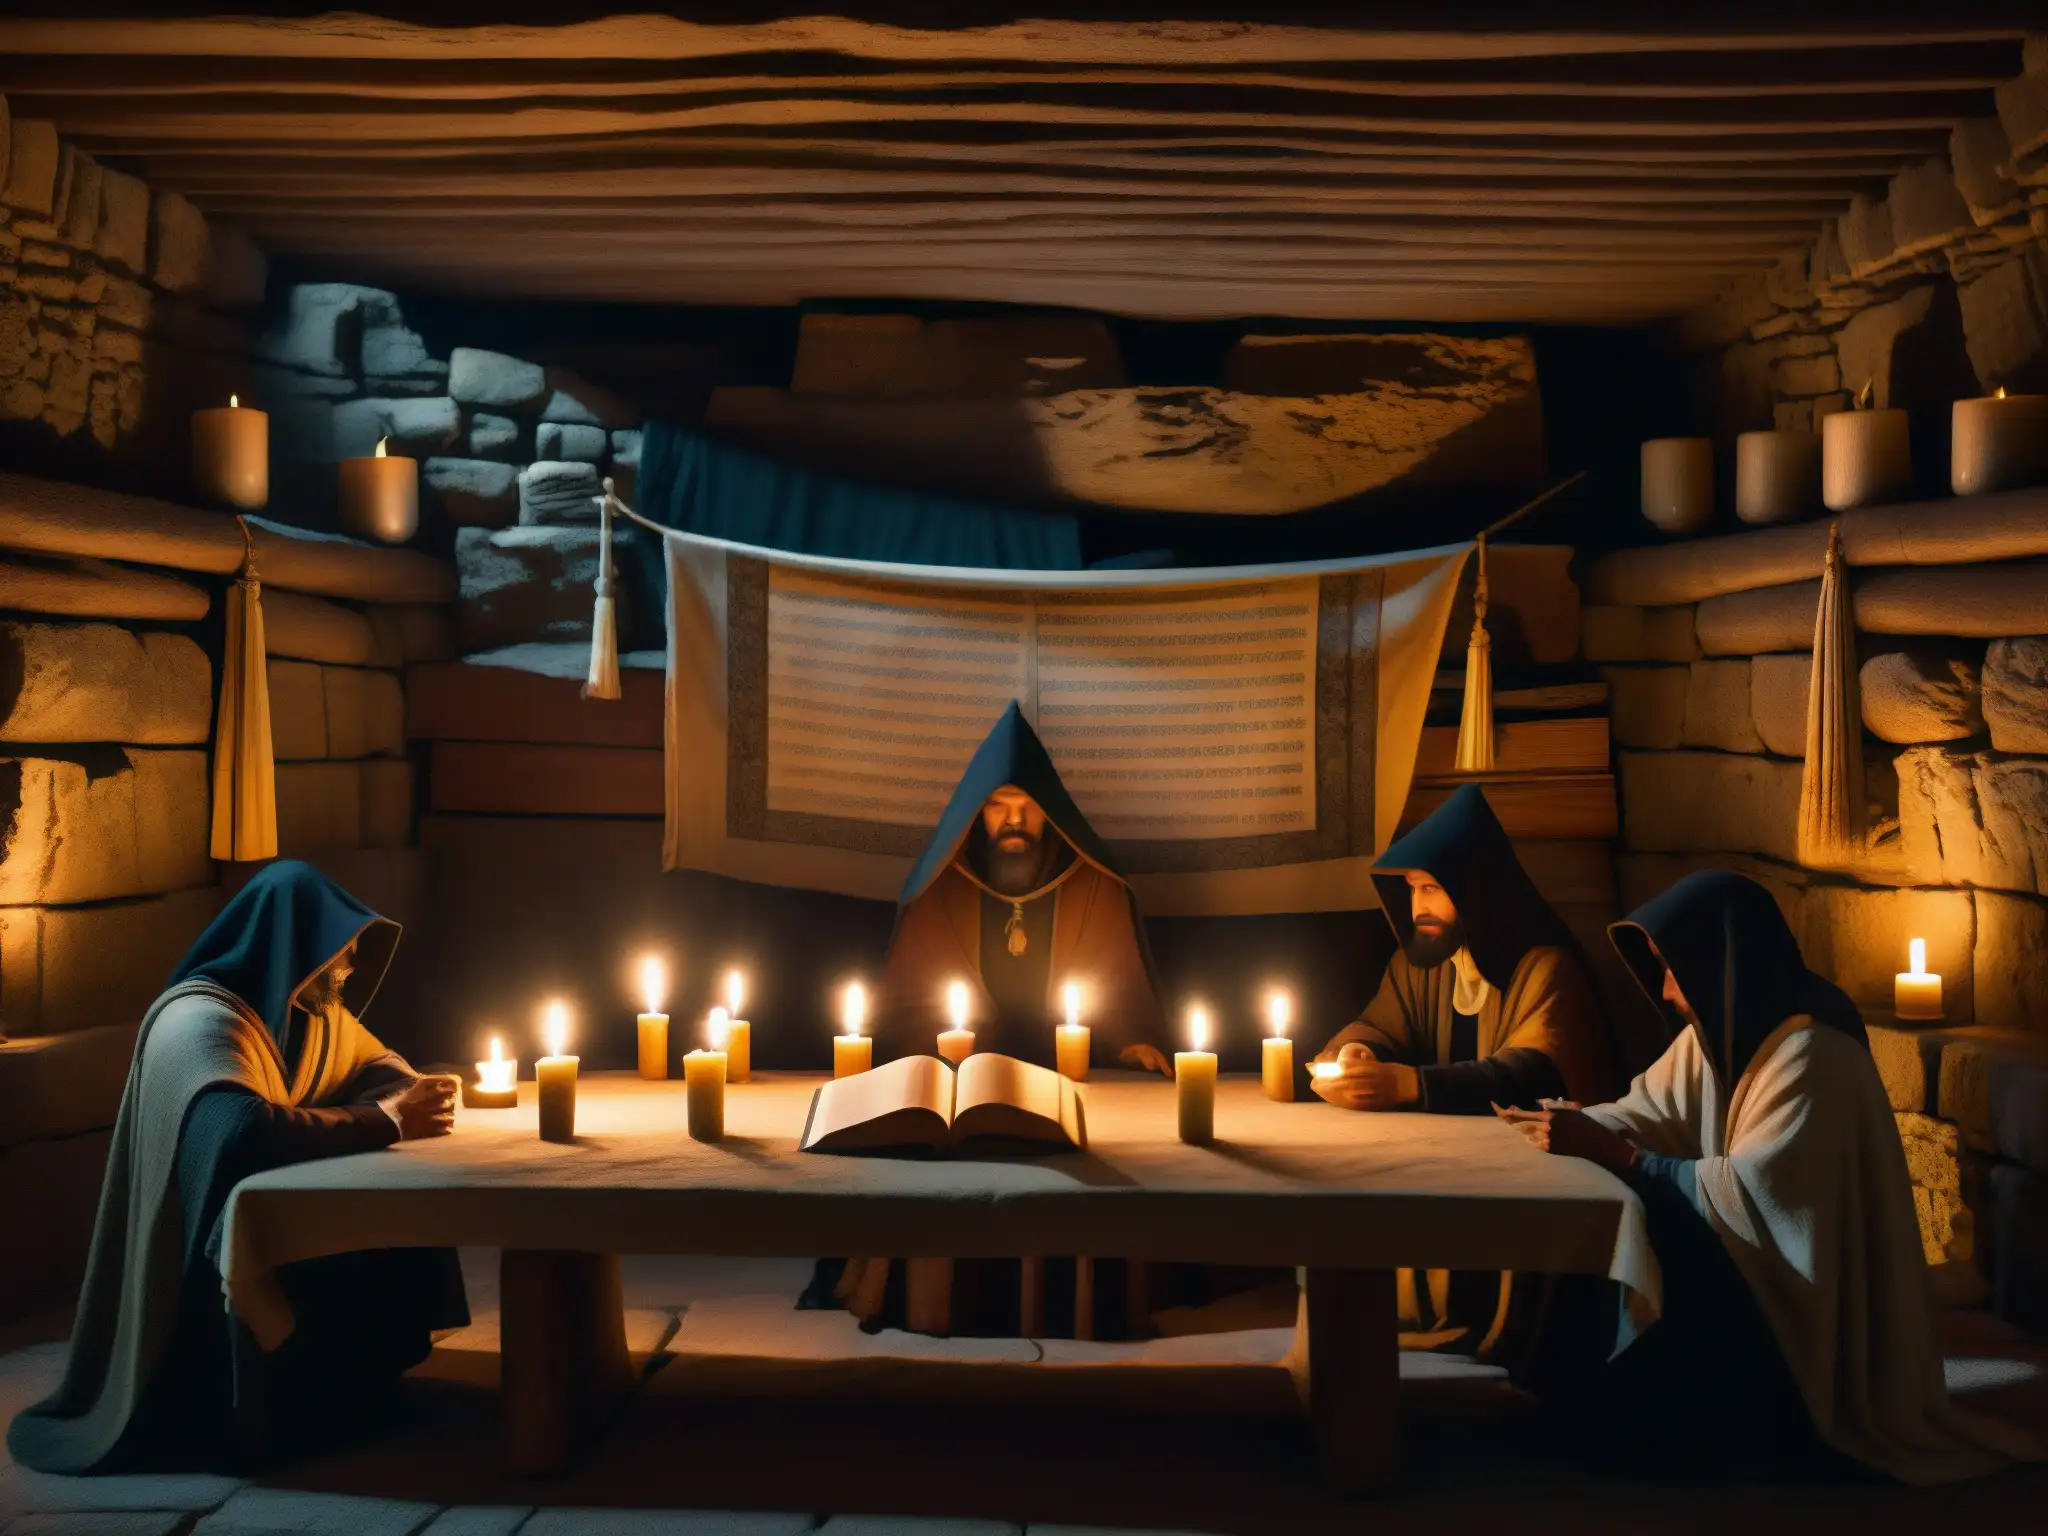 Escena de rituales secretos en un club bohemio: figuras en capa alrededor de una mesa con tomos antiguos y velas, bajo una tenue luz de vela